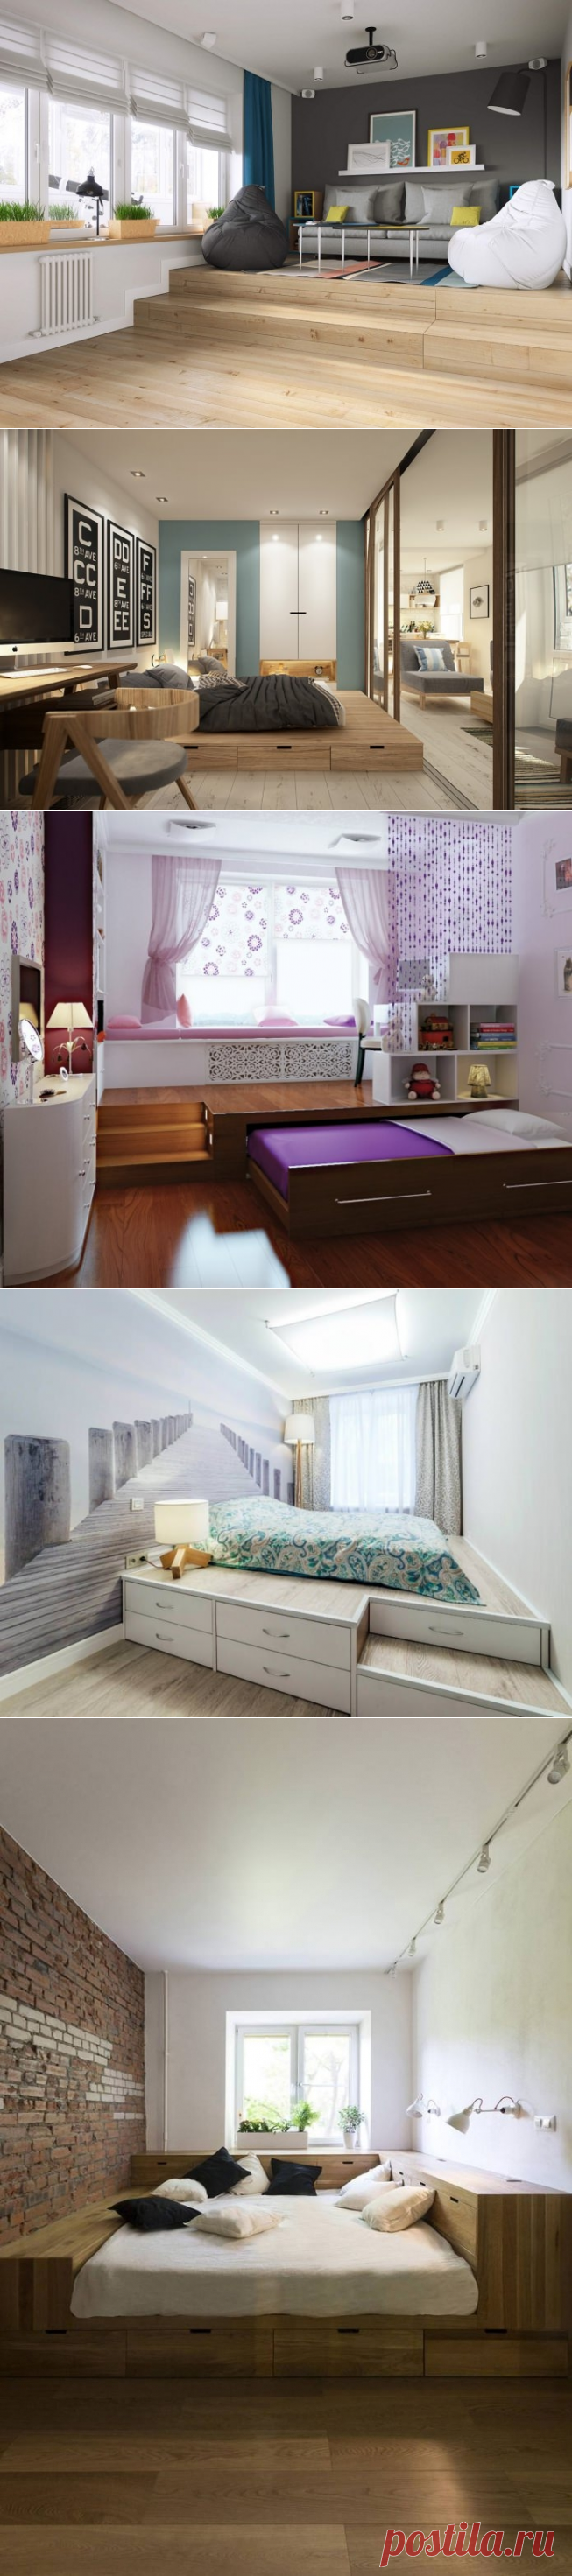 Кровать-подиум – компактное и функциональное решение для интерьера - Дизайн интерьеров | Идеи вашего дома | Lodgers